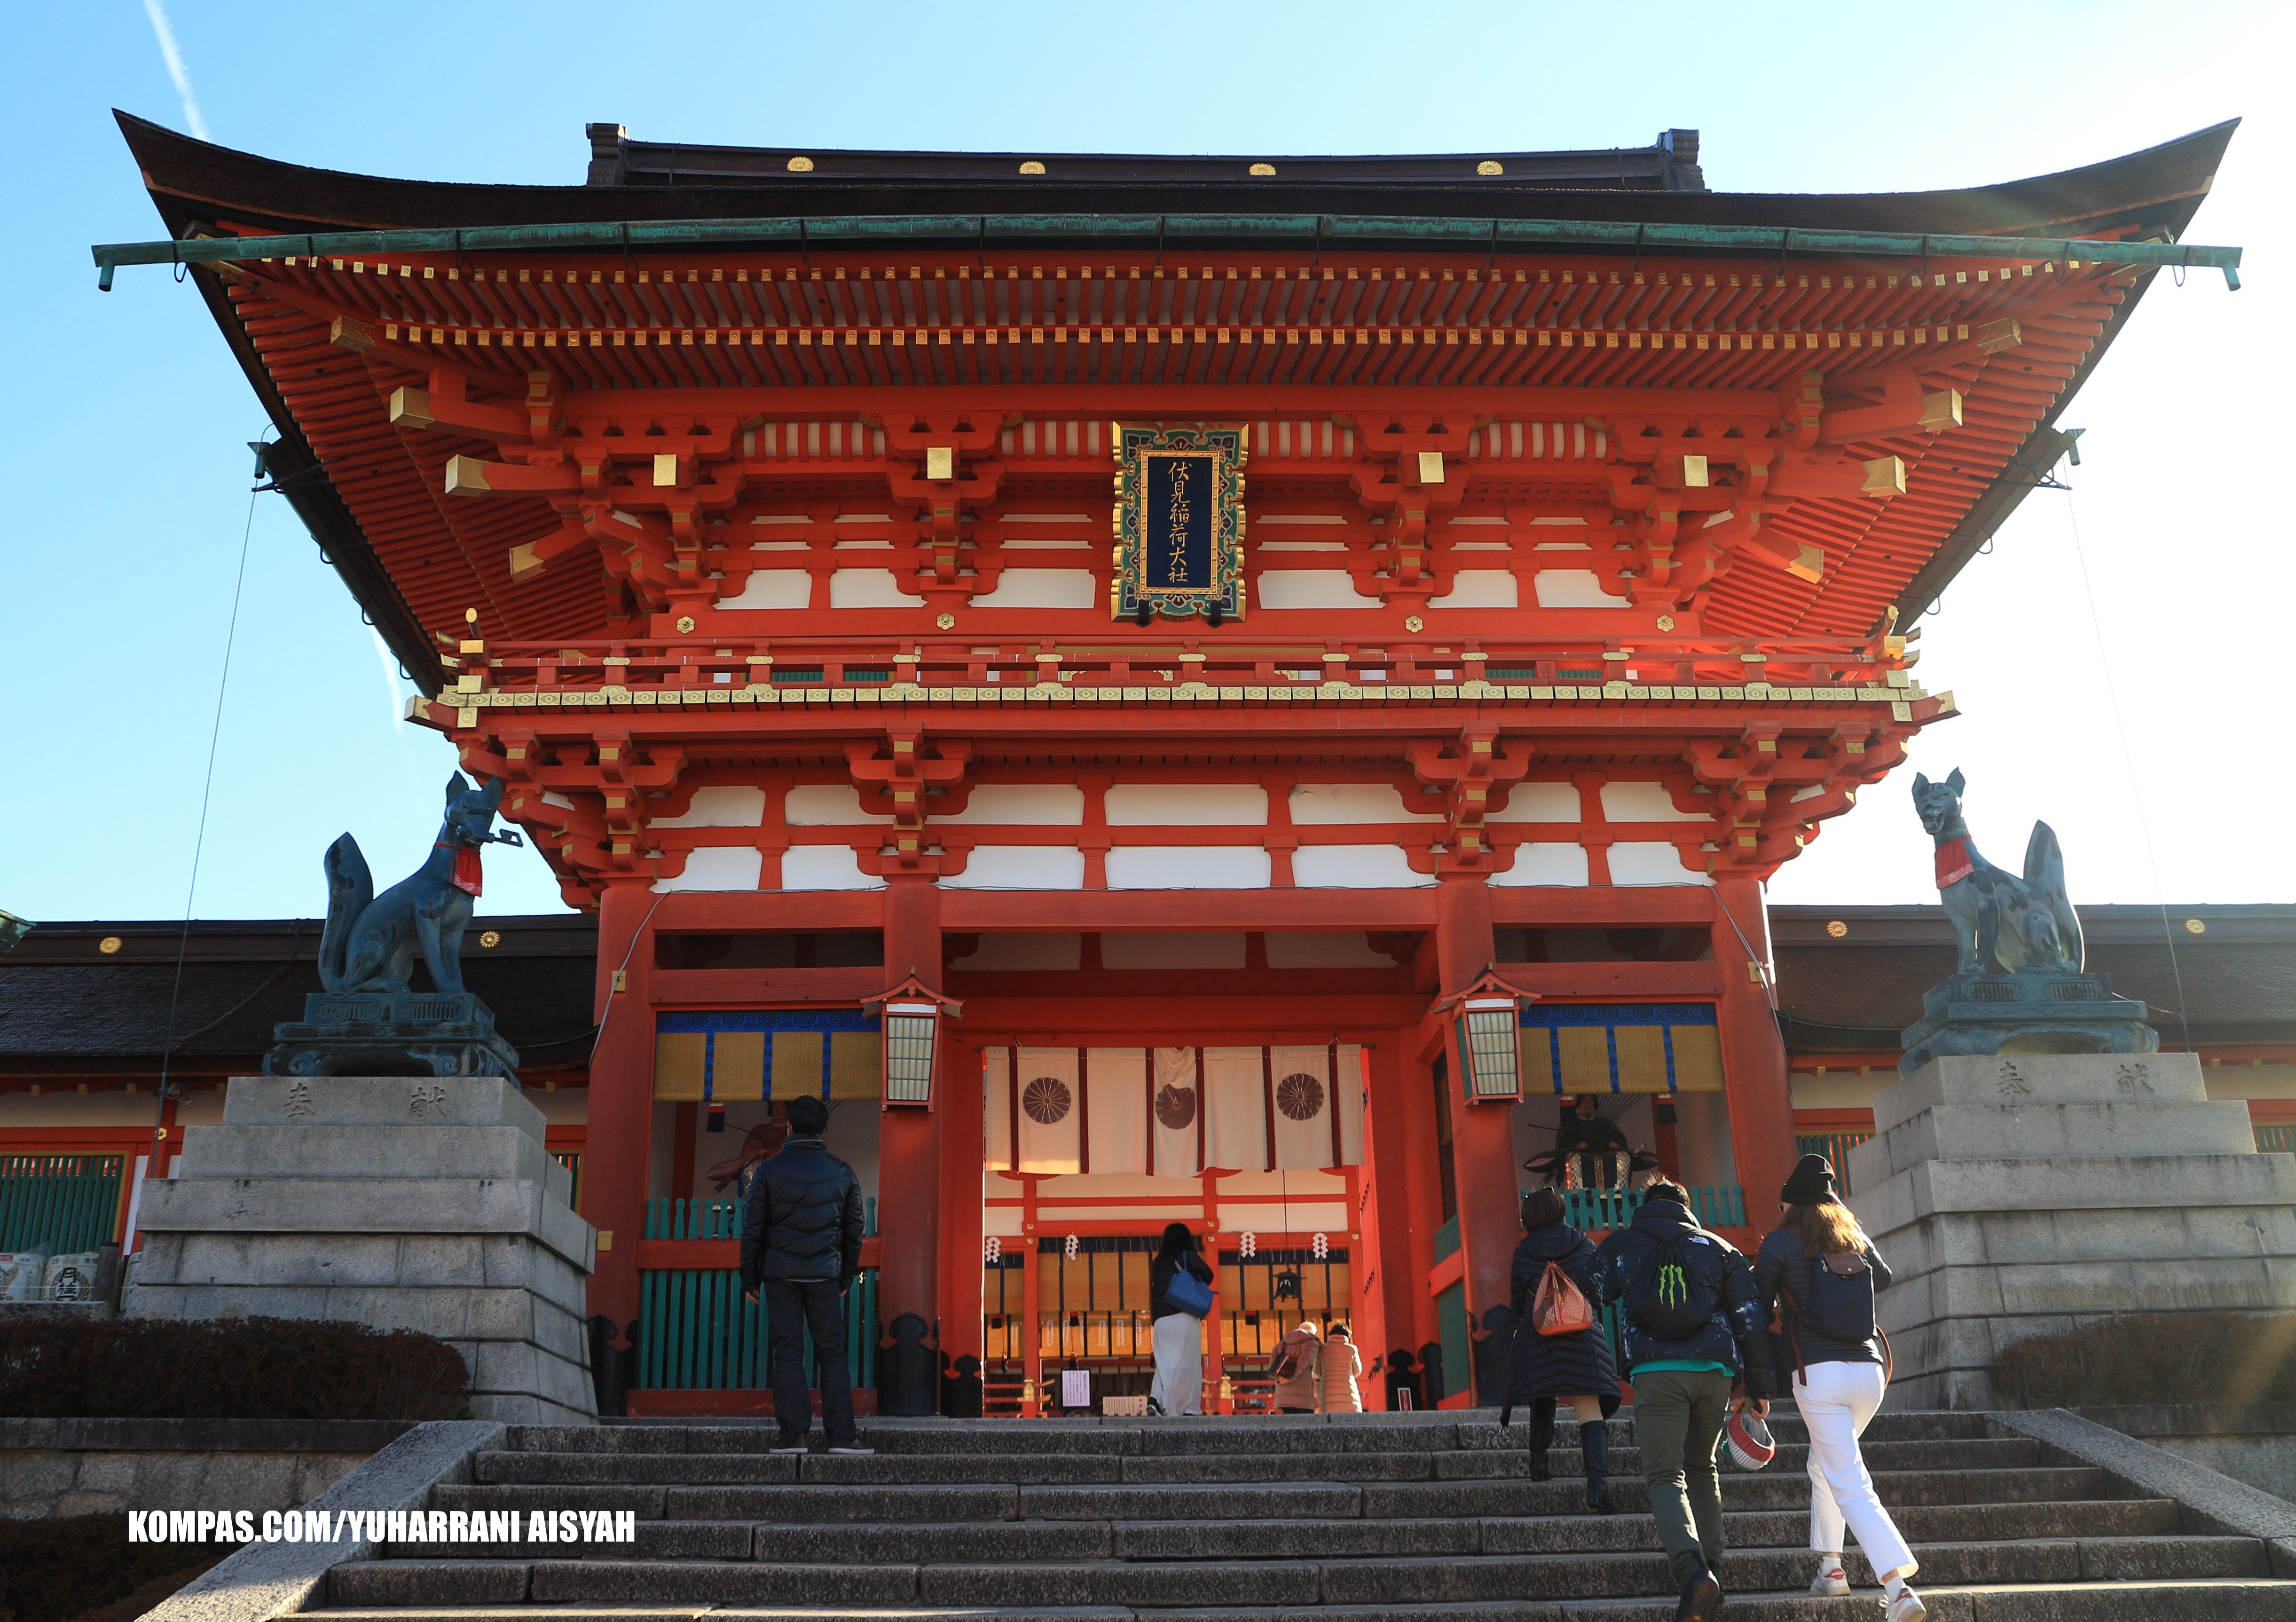 Salah satu tempat wisata di Jepang yang wajib dikunjungi yaitu Fushimi inari taisha di Kyoto. (KOMPAS.COM/YUHARRANI AISYAH)